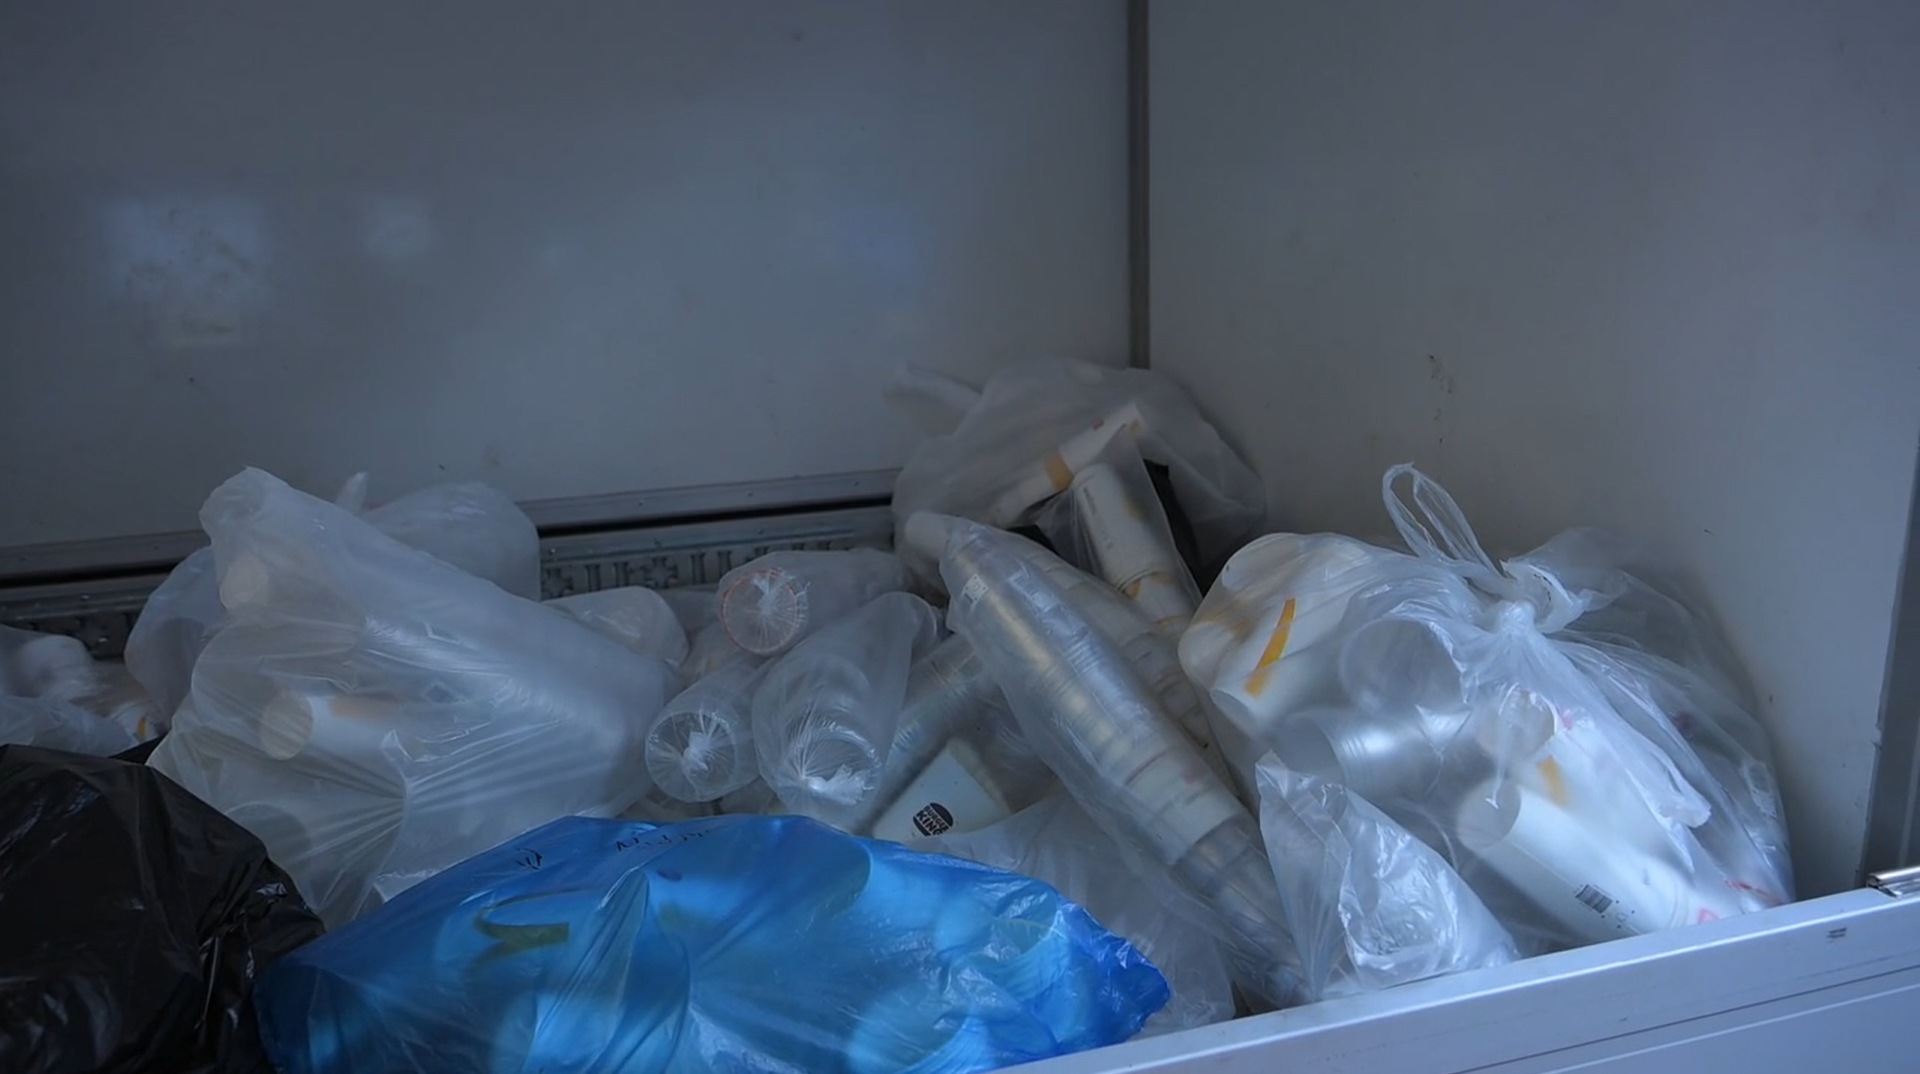 압축장을 거쳐 재활용 공장으로 가기 위해 수거된 보증금제 컵들이 수거업체 트럭에 실려 있다.